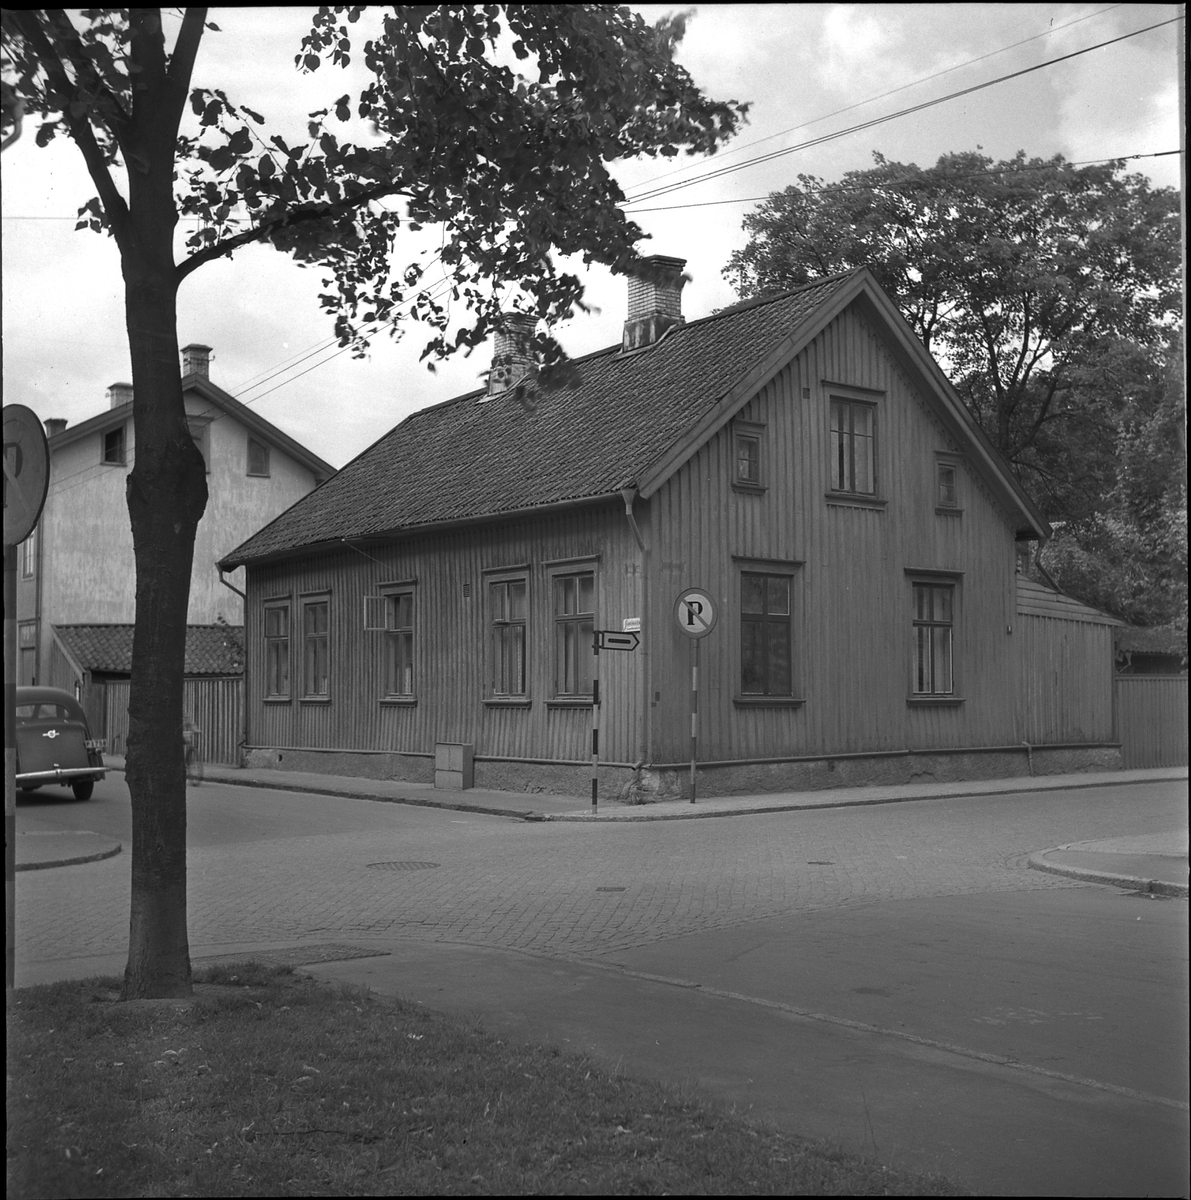 Fastighet (kallad Kollegabostället) i hörnet Drottninggatan – Västra Kyrkogatan, kv Älgen, 1952. 

Byggnaden revs 1963 för att bygga en parkering, som ännu finns kvar. Kollegabostället var en tjänstebostad för lärare i gamla stadsskolan. Huset donerades till staden 1813 av rektor Birger Knös men friköptes sedan 1946 och blev då hyreshus fram till rivningen.